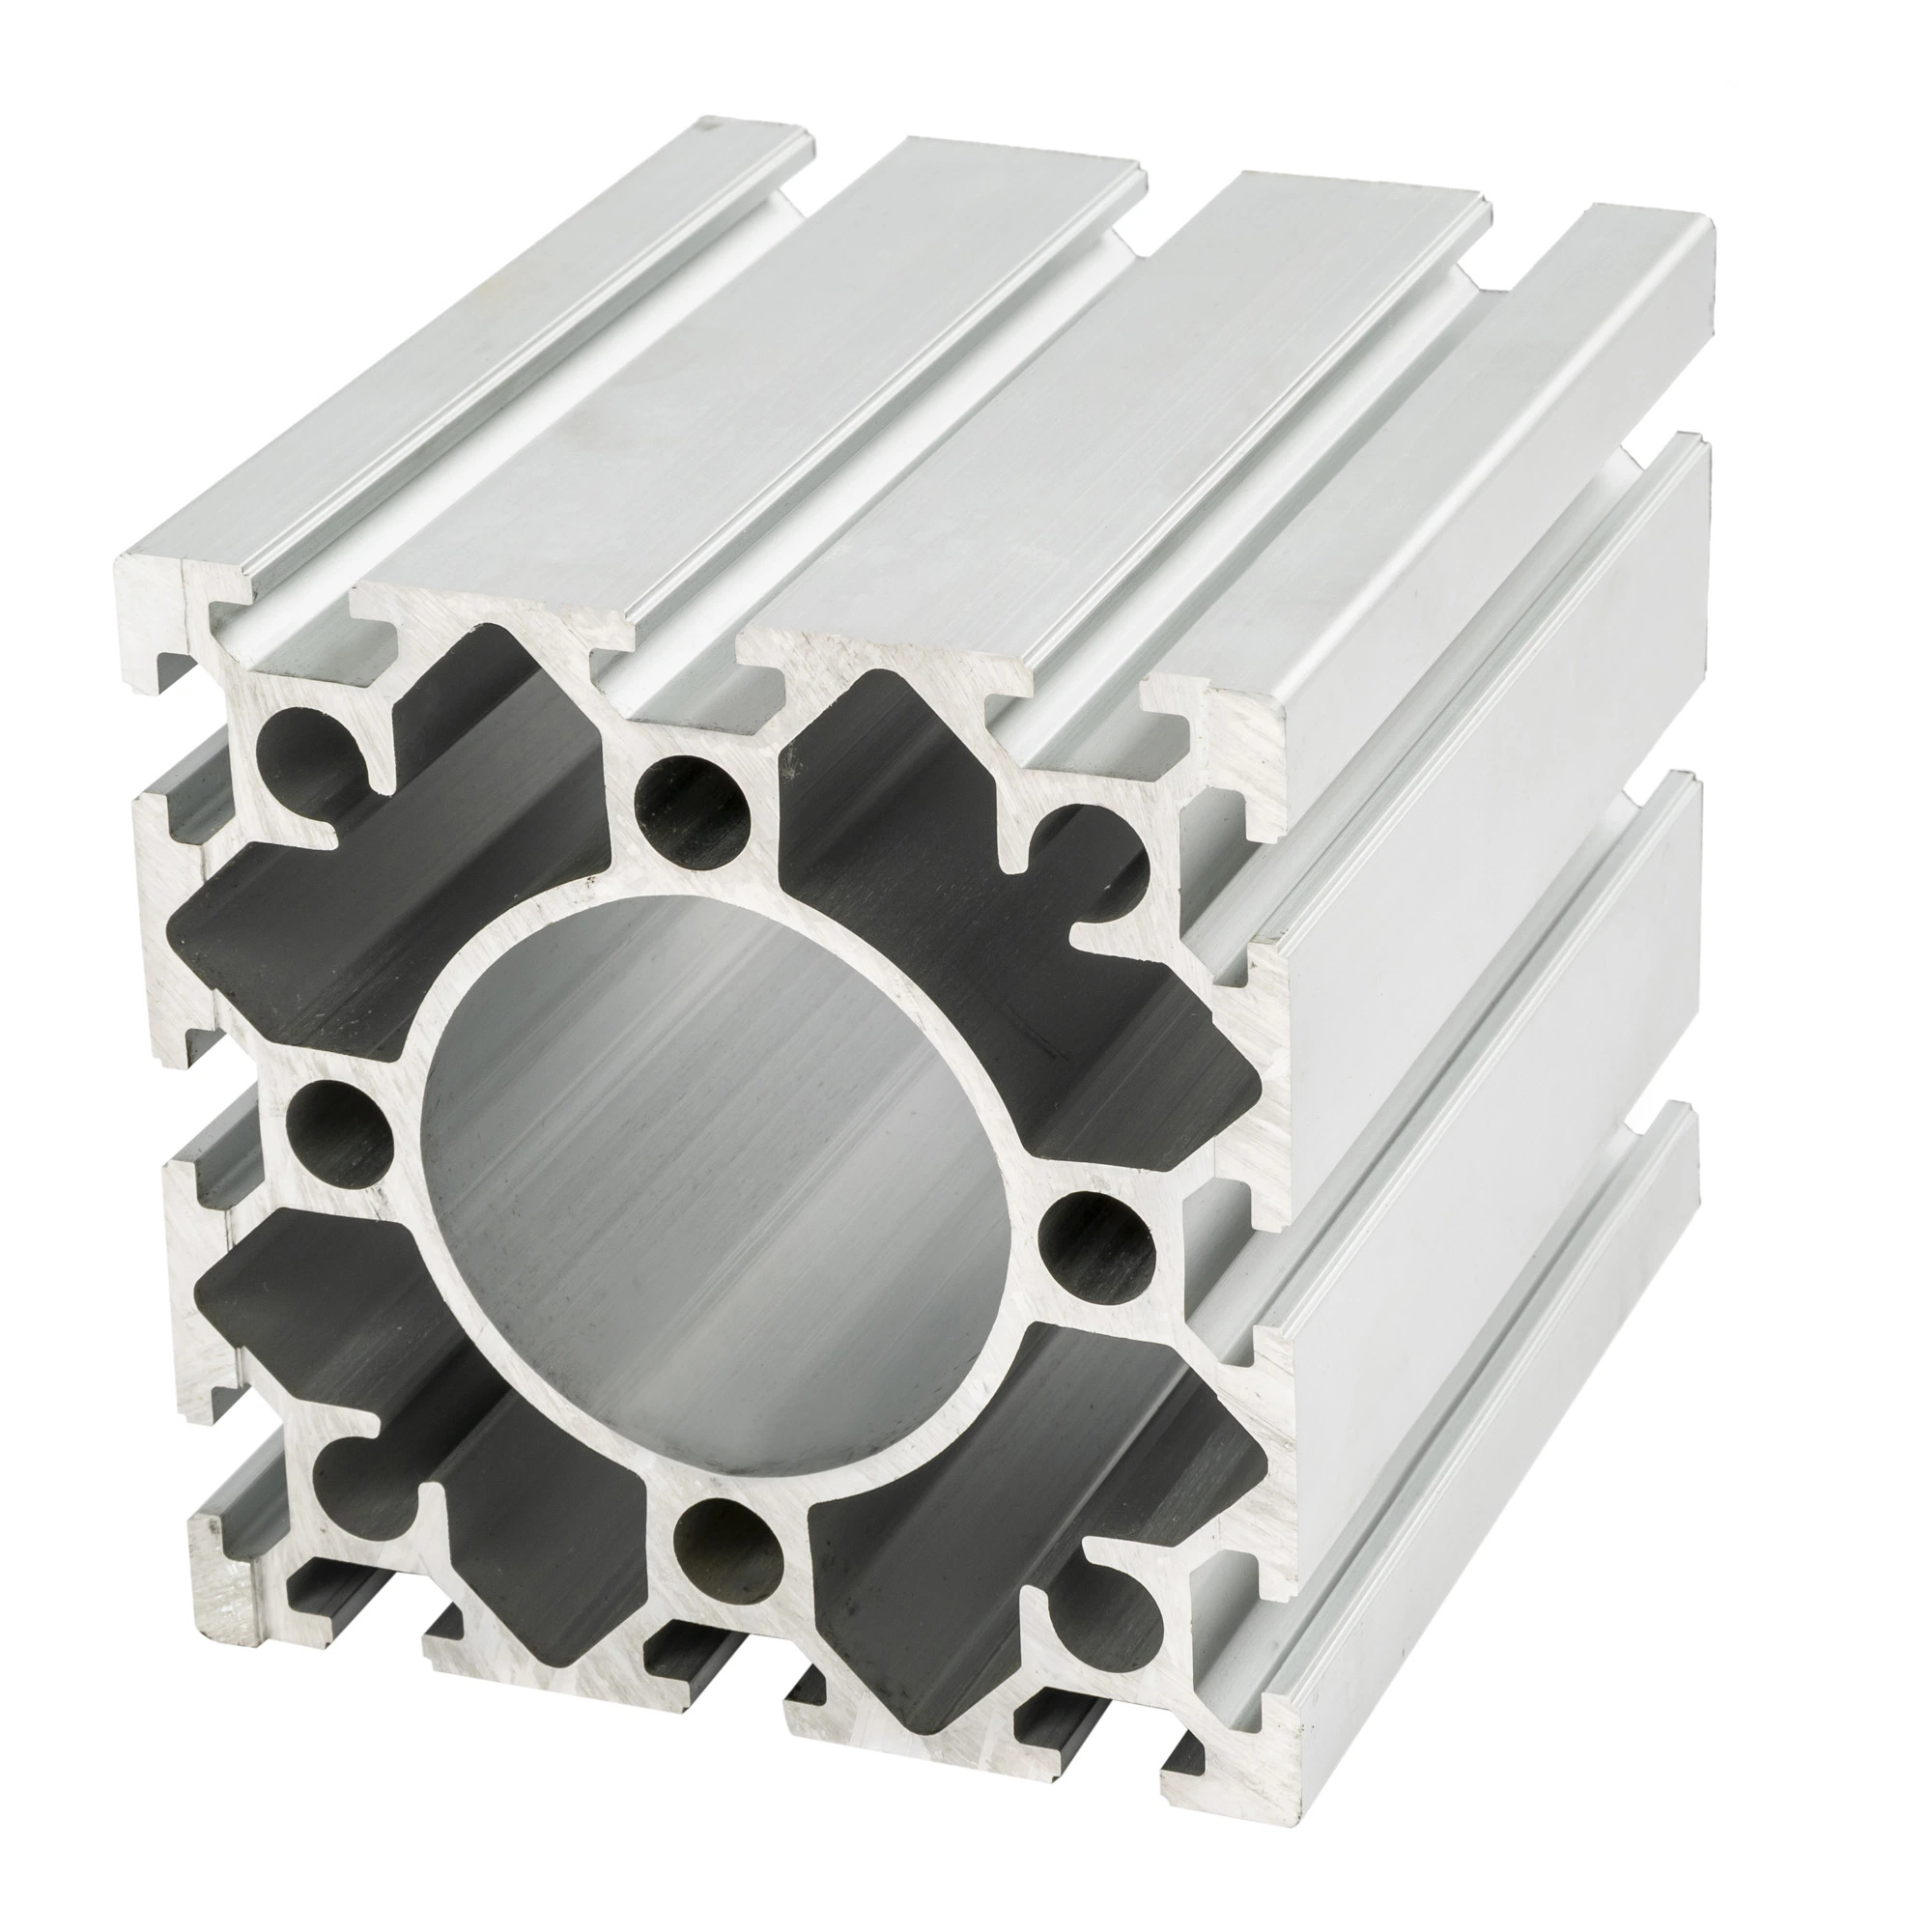 Alta precisión personalizada de la impresora / instrumento médico CNC Machining Piezas metálicas de aluminio fundición a presión de componentes